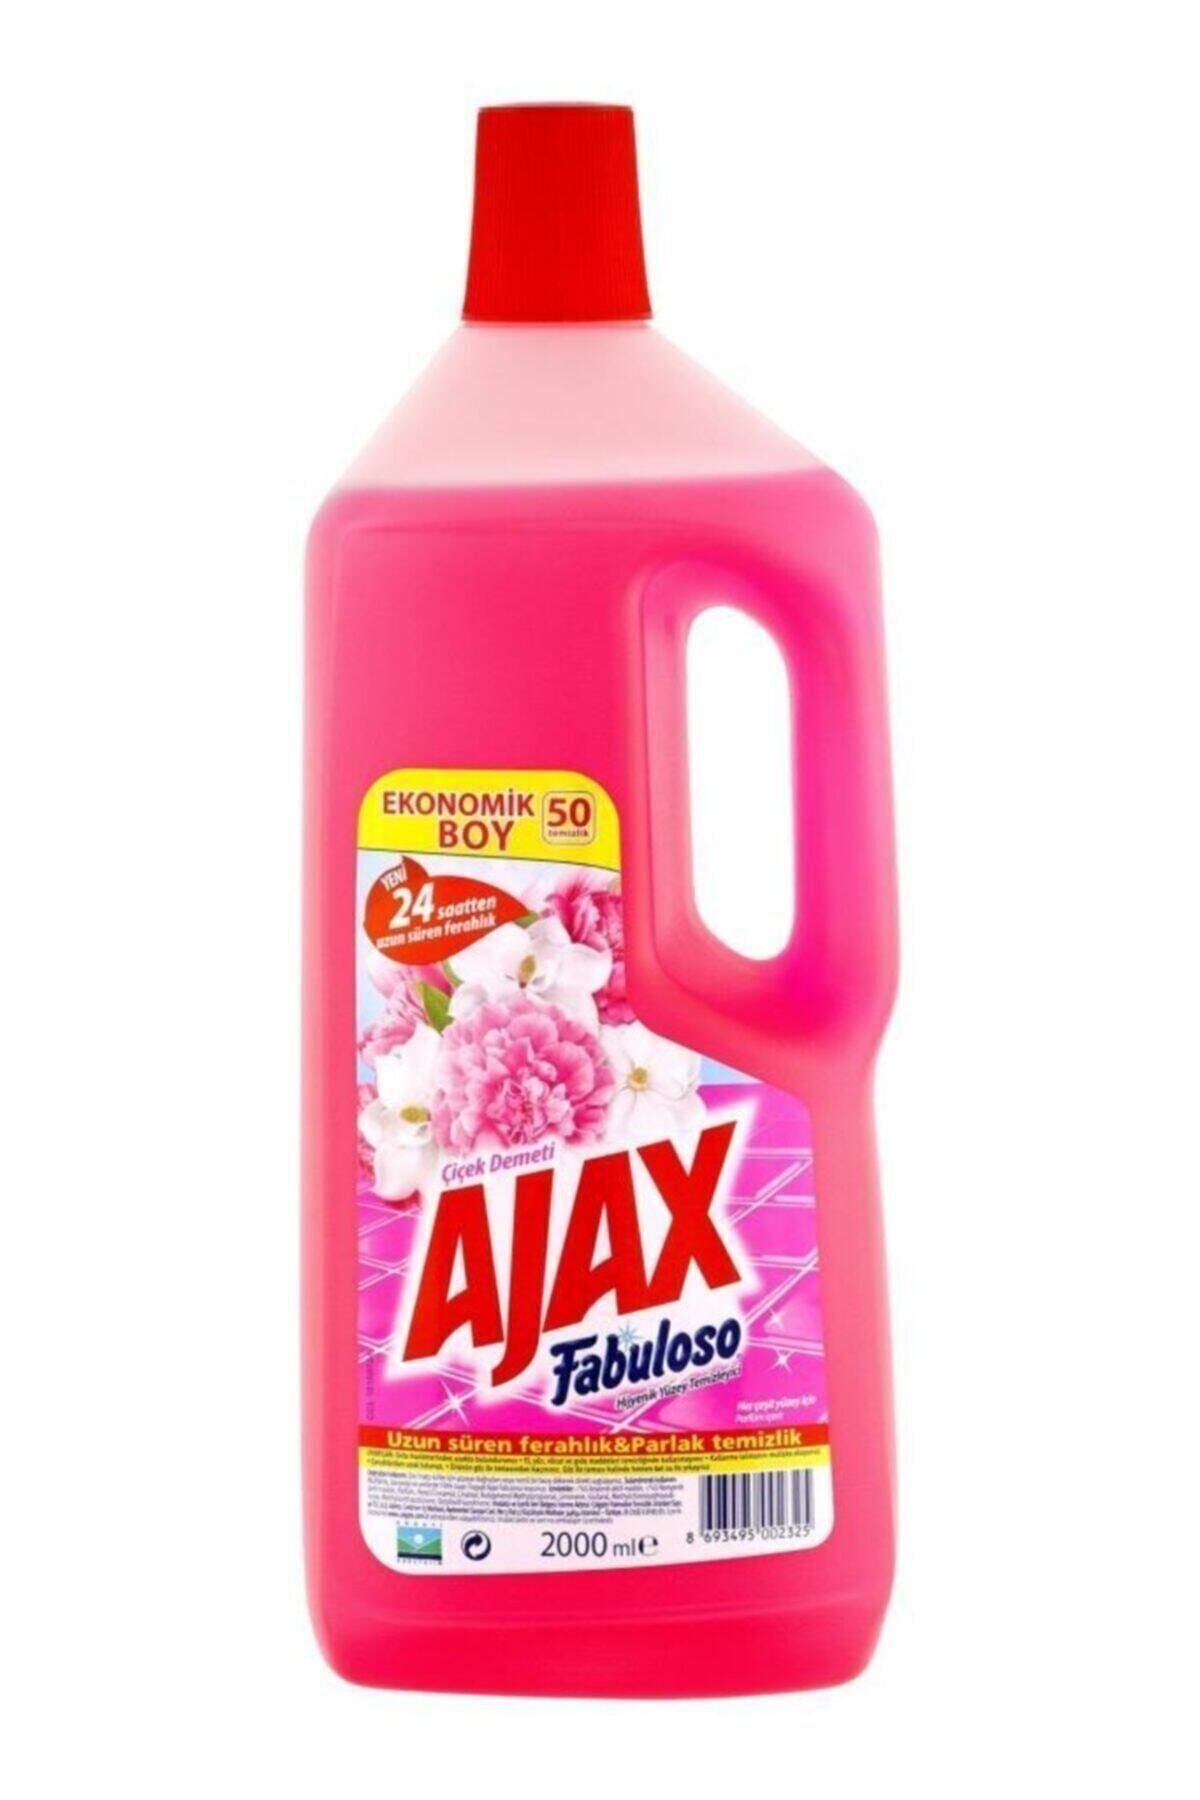 Ajax Fabuloso Yüzey Temizleyici Çiçek Demeti 2000 ml